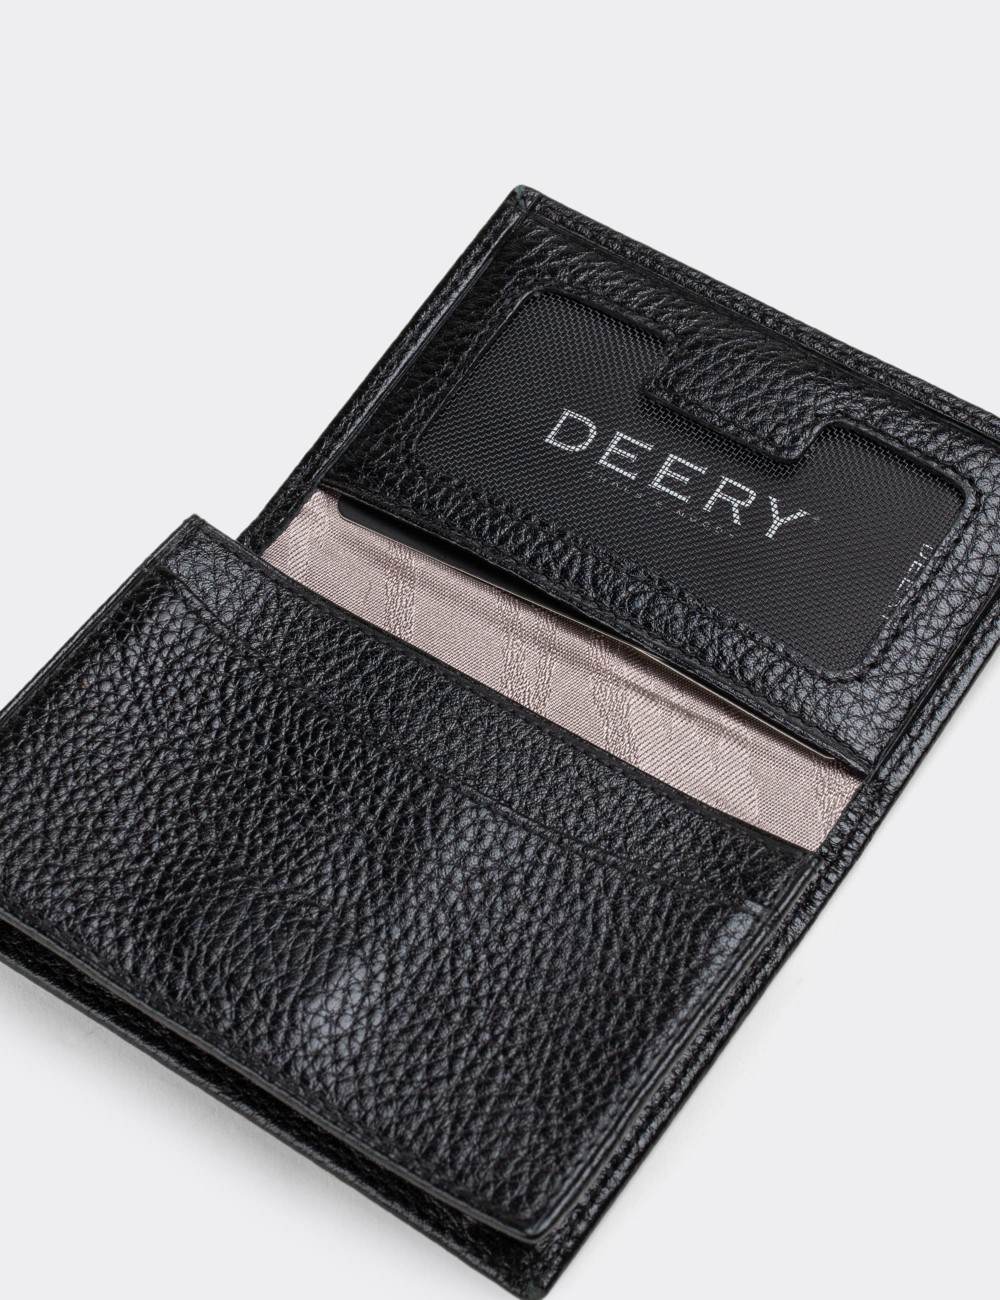  Leather Black Men's Wallet - 00585MSYHZ01